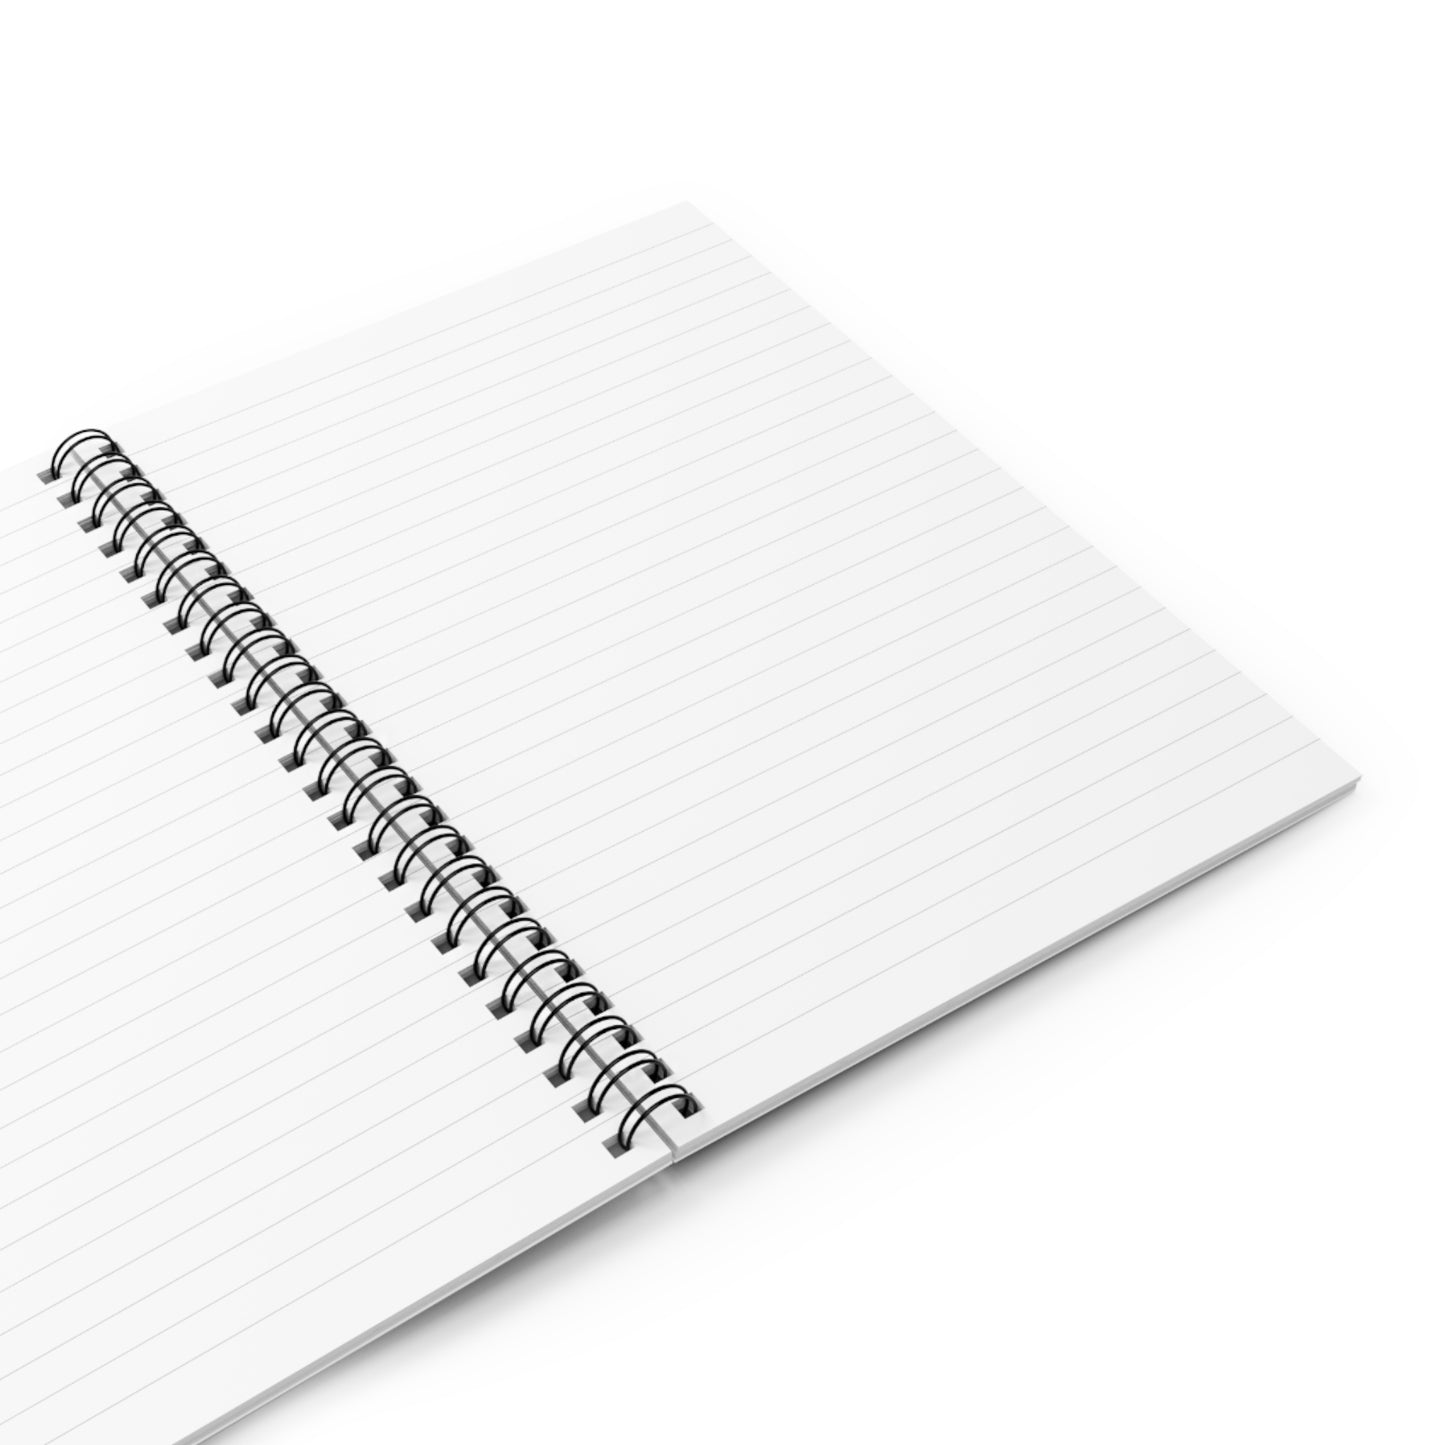 Centered - Journal Notebook